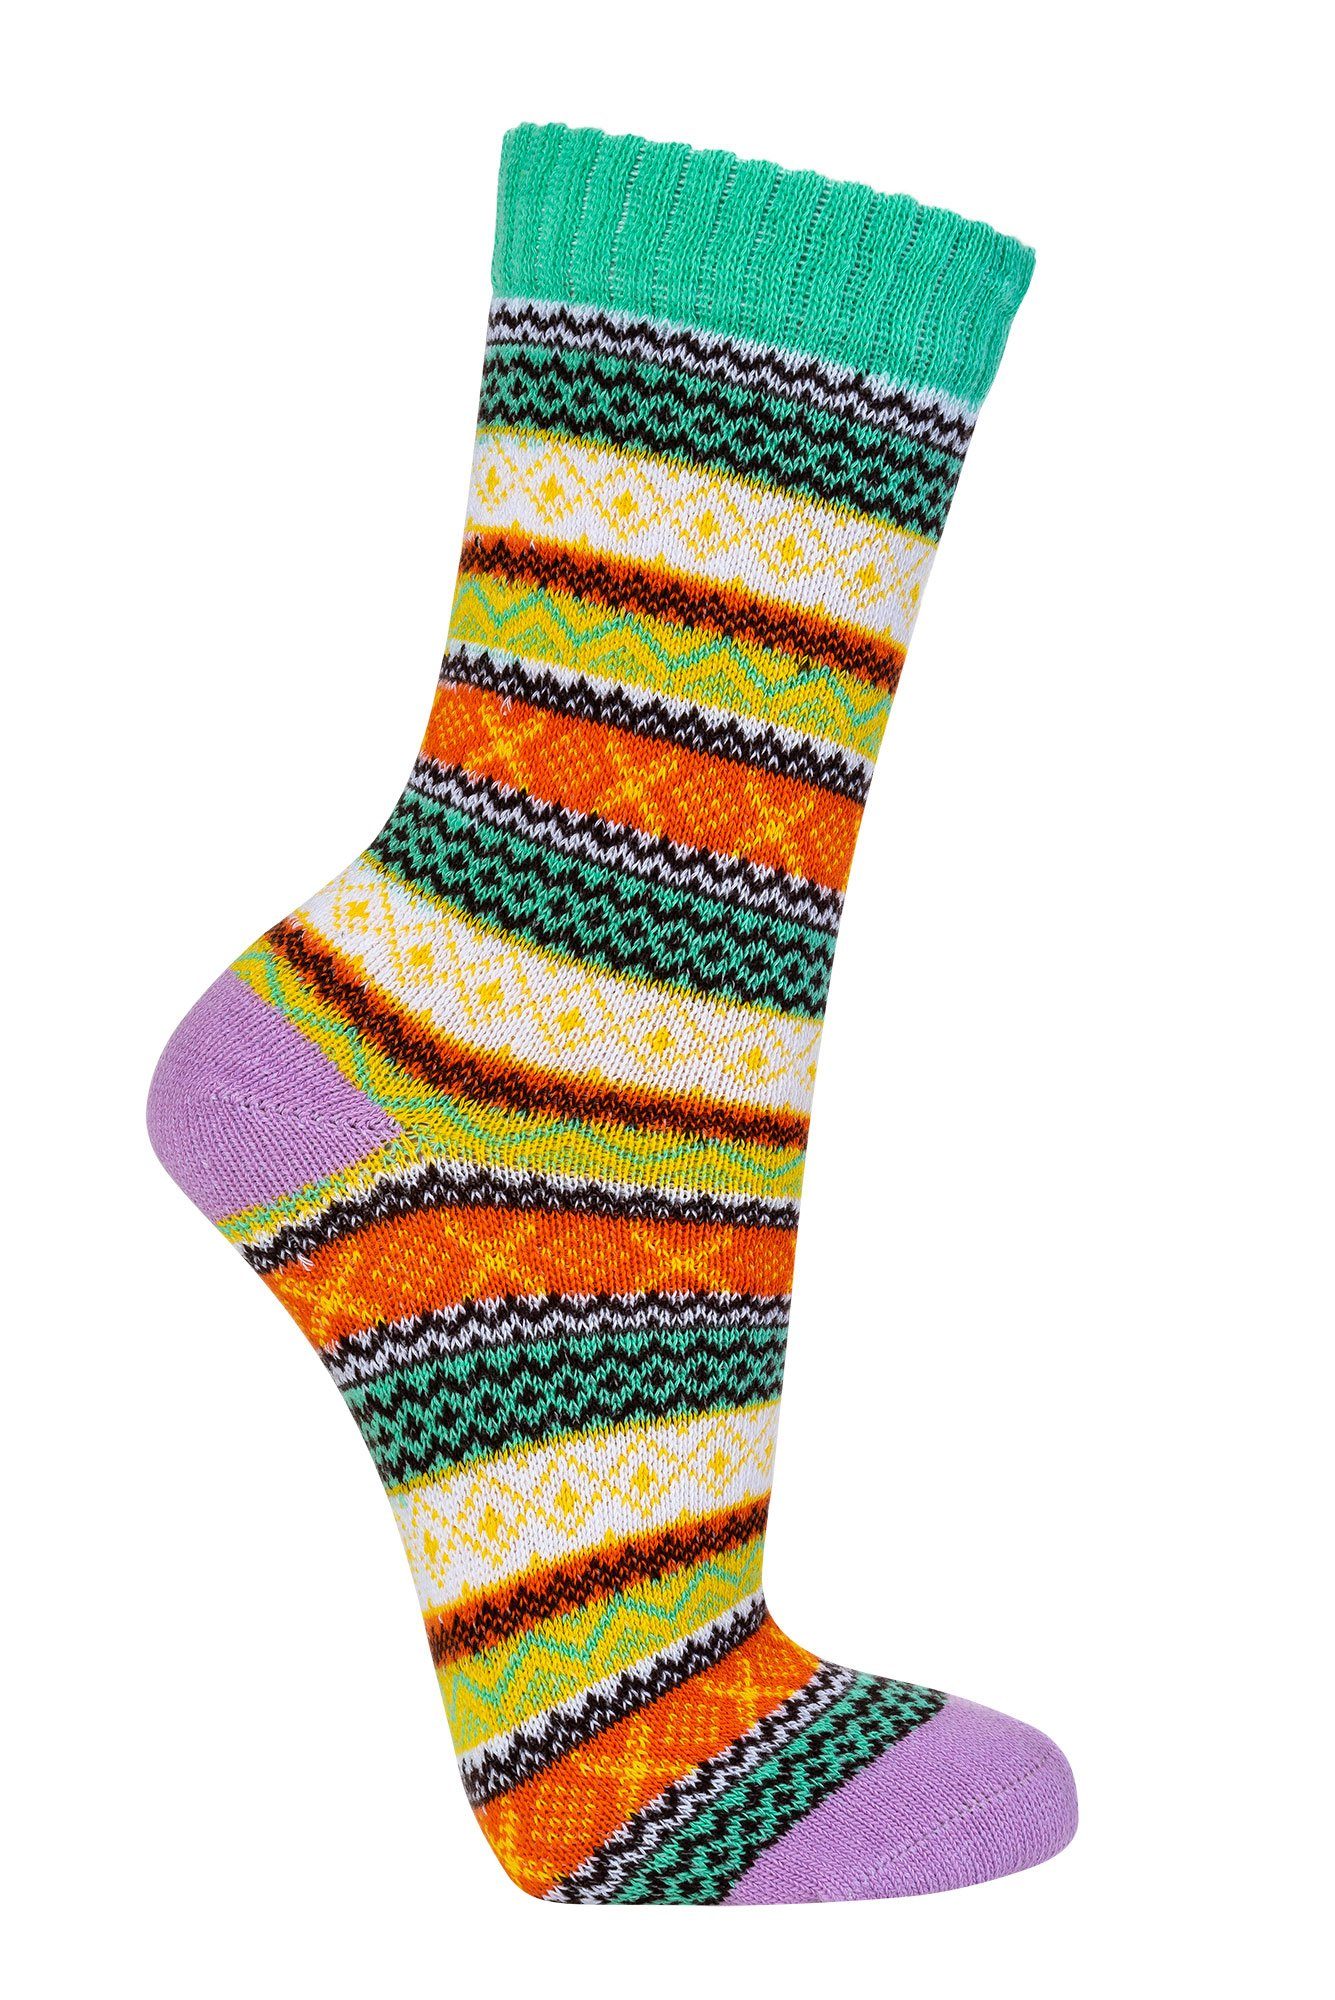 Wowerat Freizeitsocken Bunte Norweger Socken mit mit (3 schönem Paar) Hygge Muster Baumwolle 90